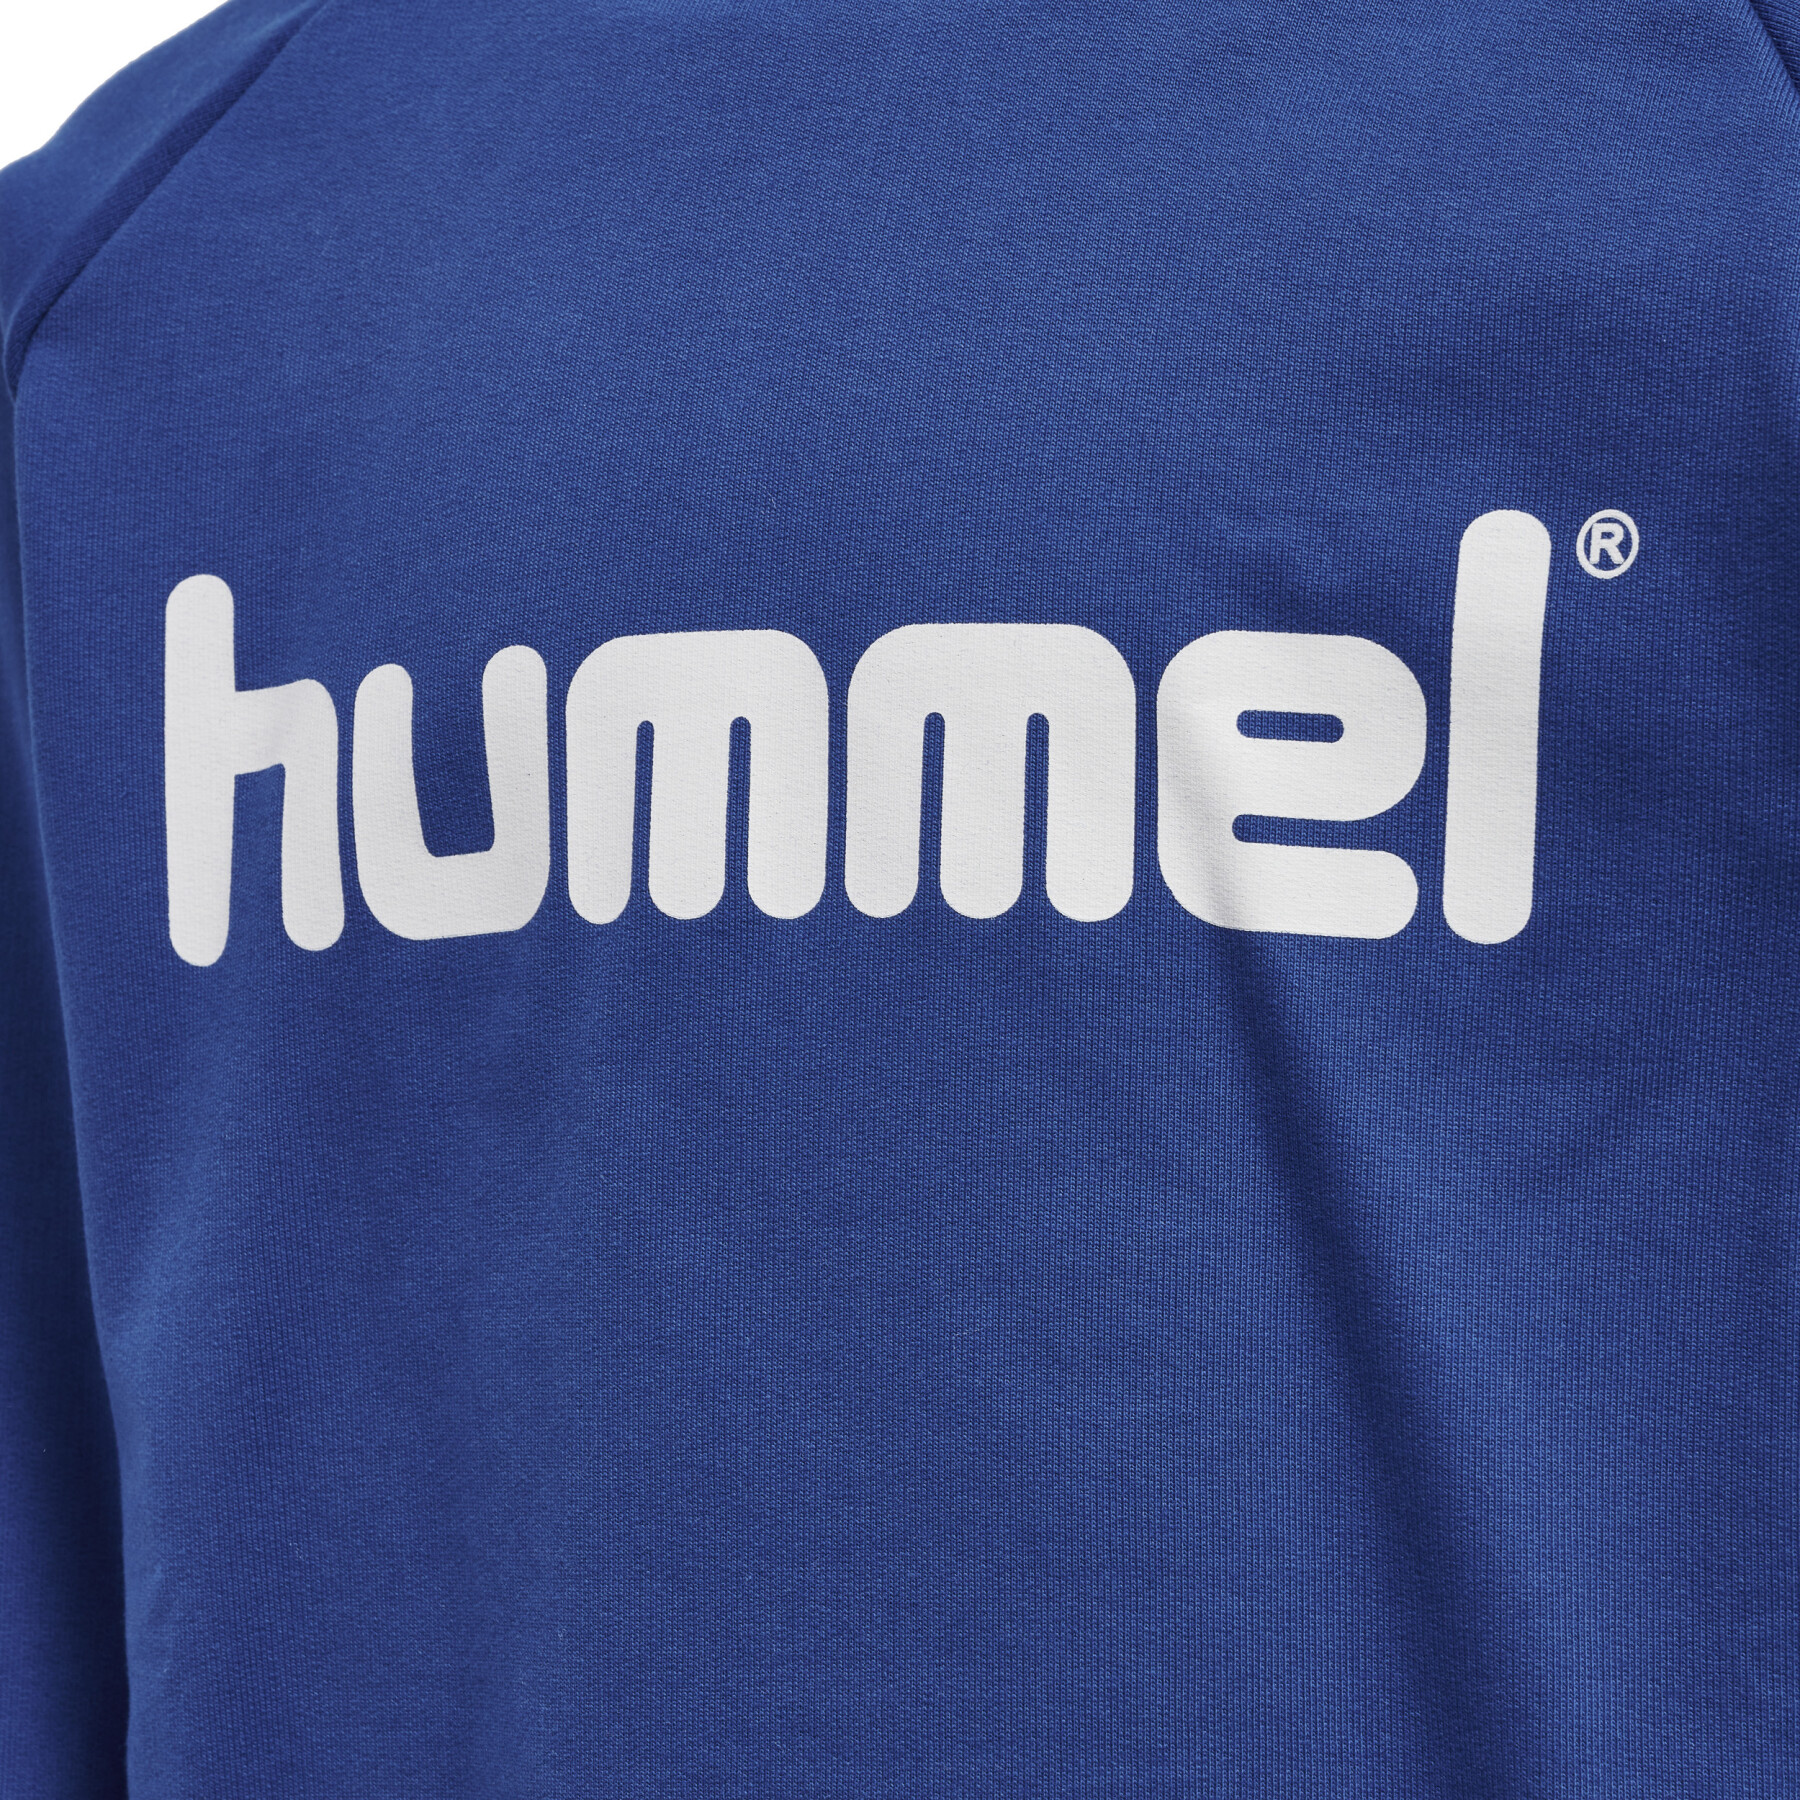 Camisola com capuz para criança Hummel Cotton Logo